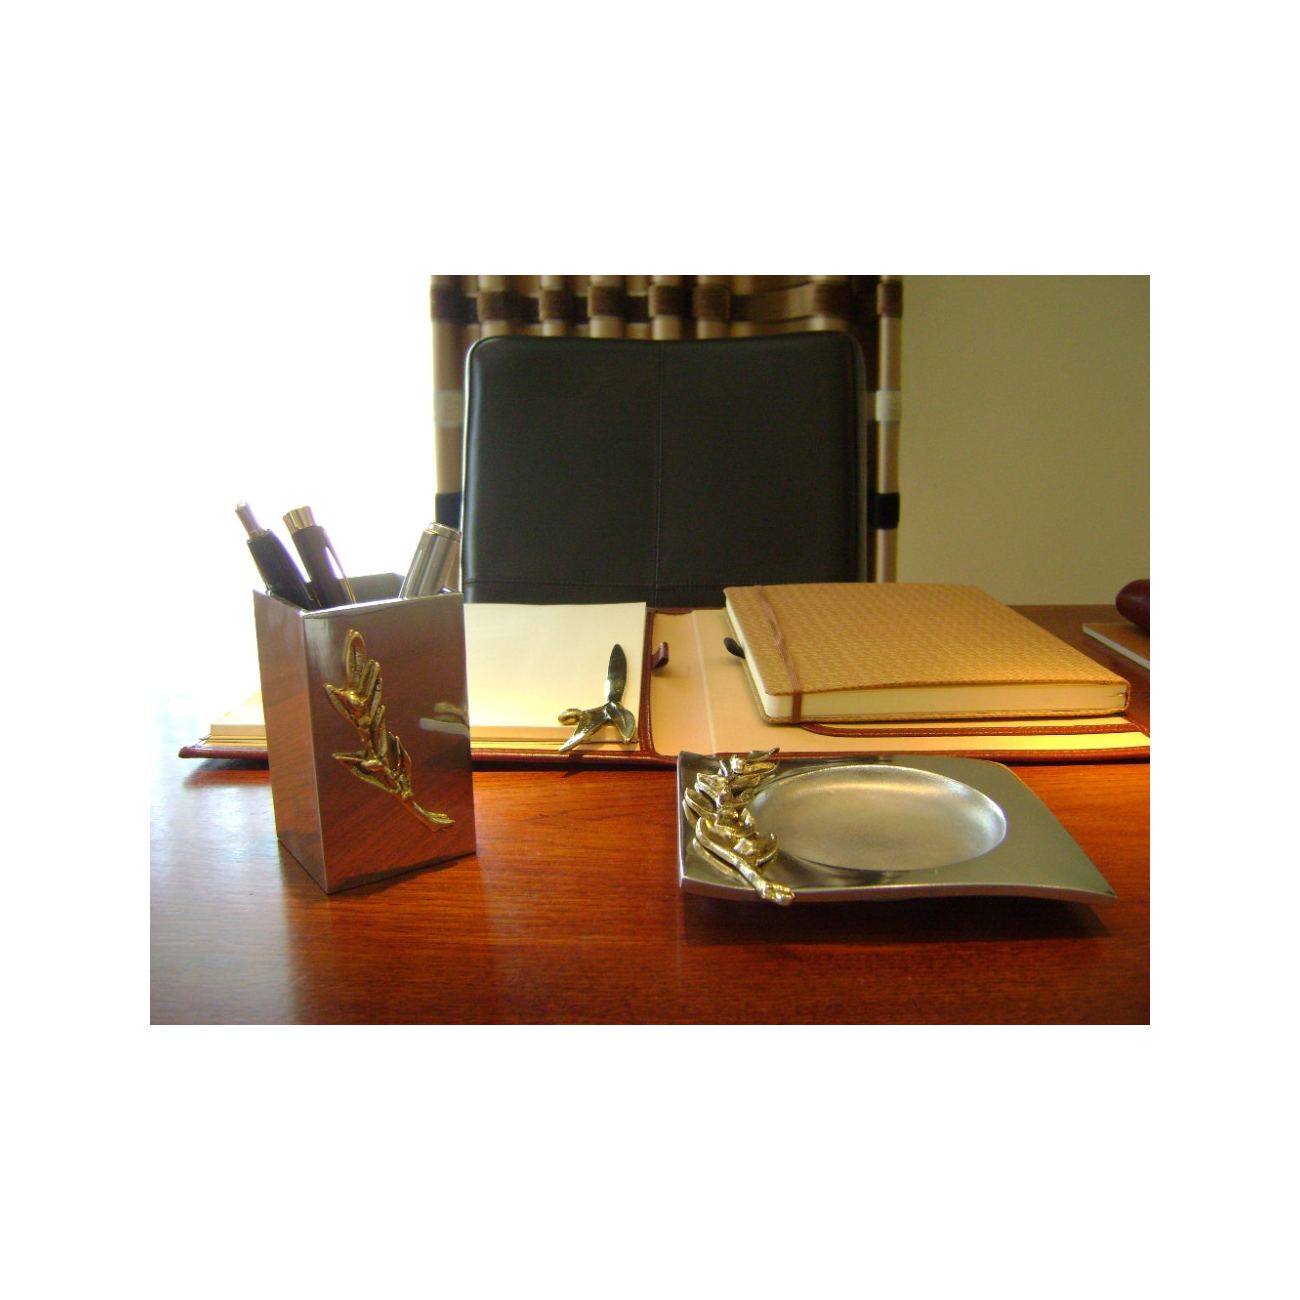 Desk Accessories Set of 2 - Olive Branch Design - Handmade Solid Metal -  Ashtray & Pen or Pencil Holder. Desk Set Gift